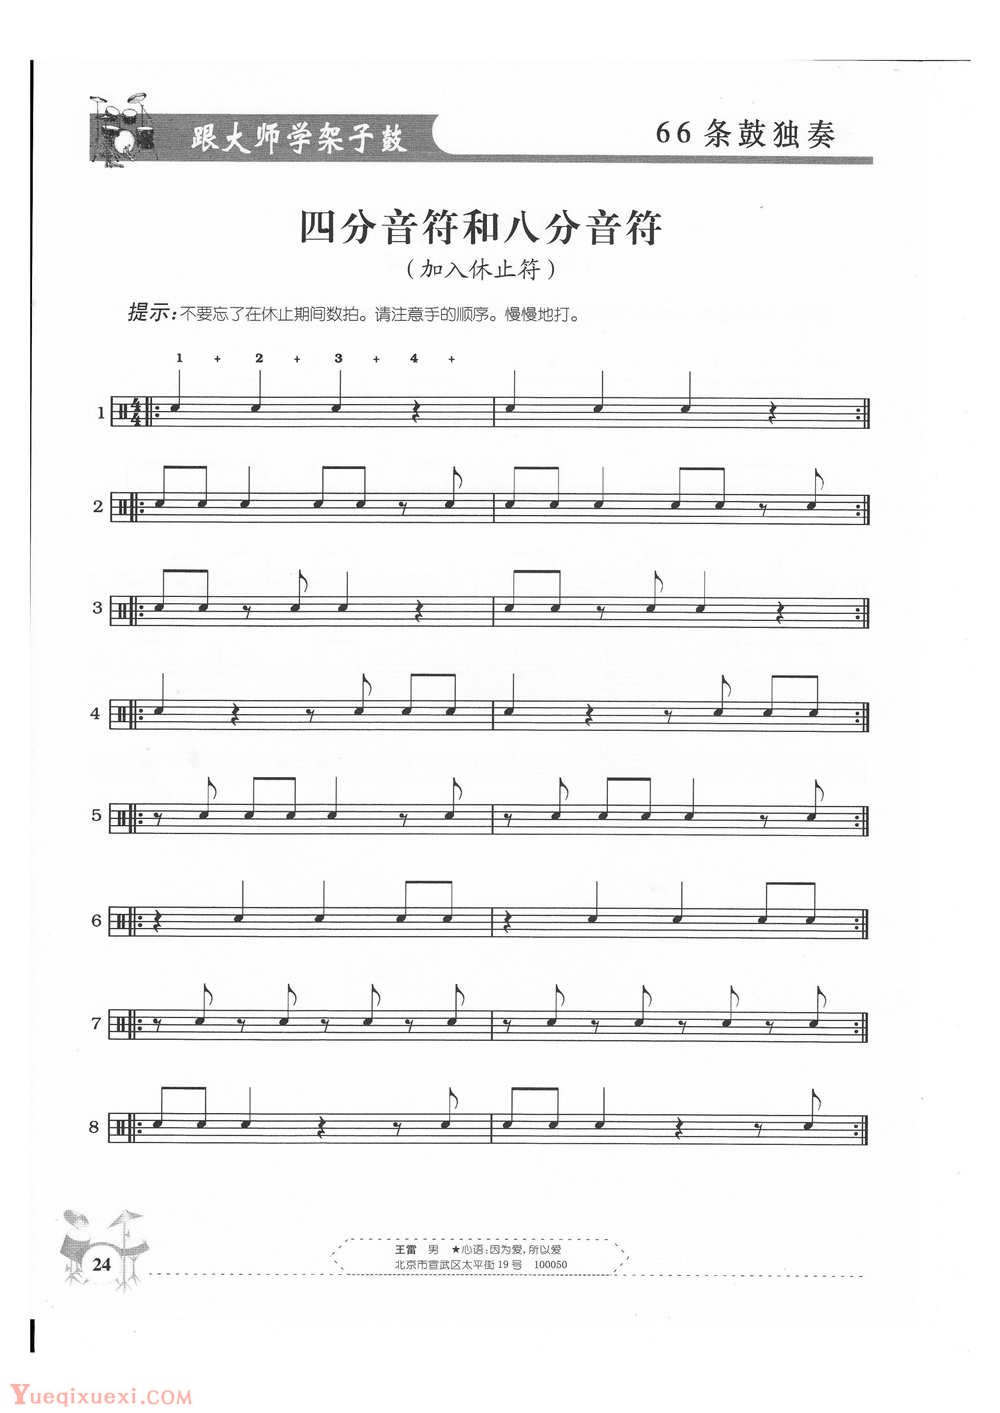 架子鼓基础练习 四分音符和八分音符(加入休止符)